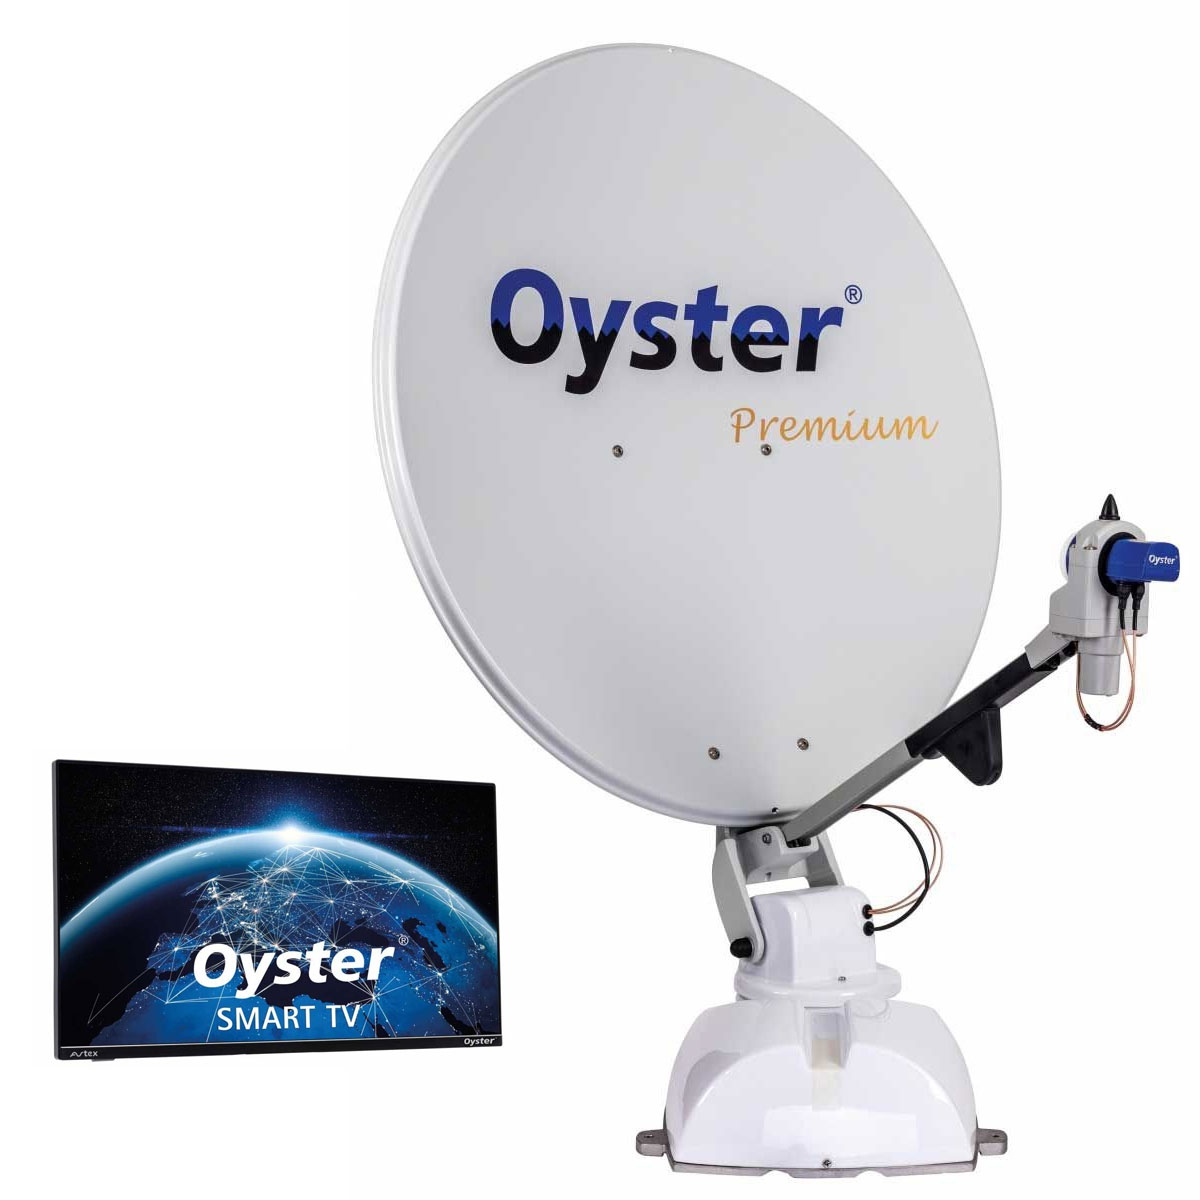 TEN HAAFT Oyster 85 Premium 21-5 Smart TV - 89025 - 88292